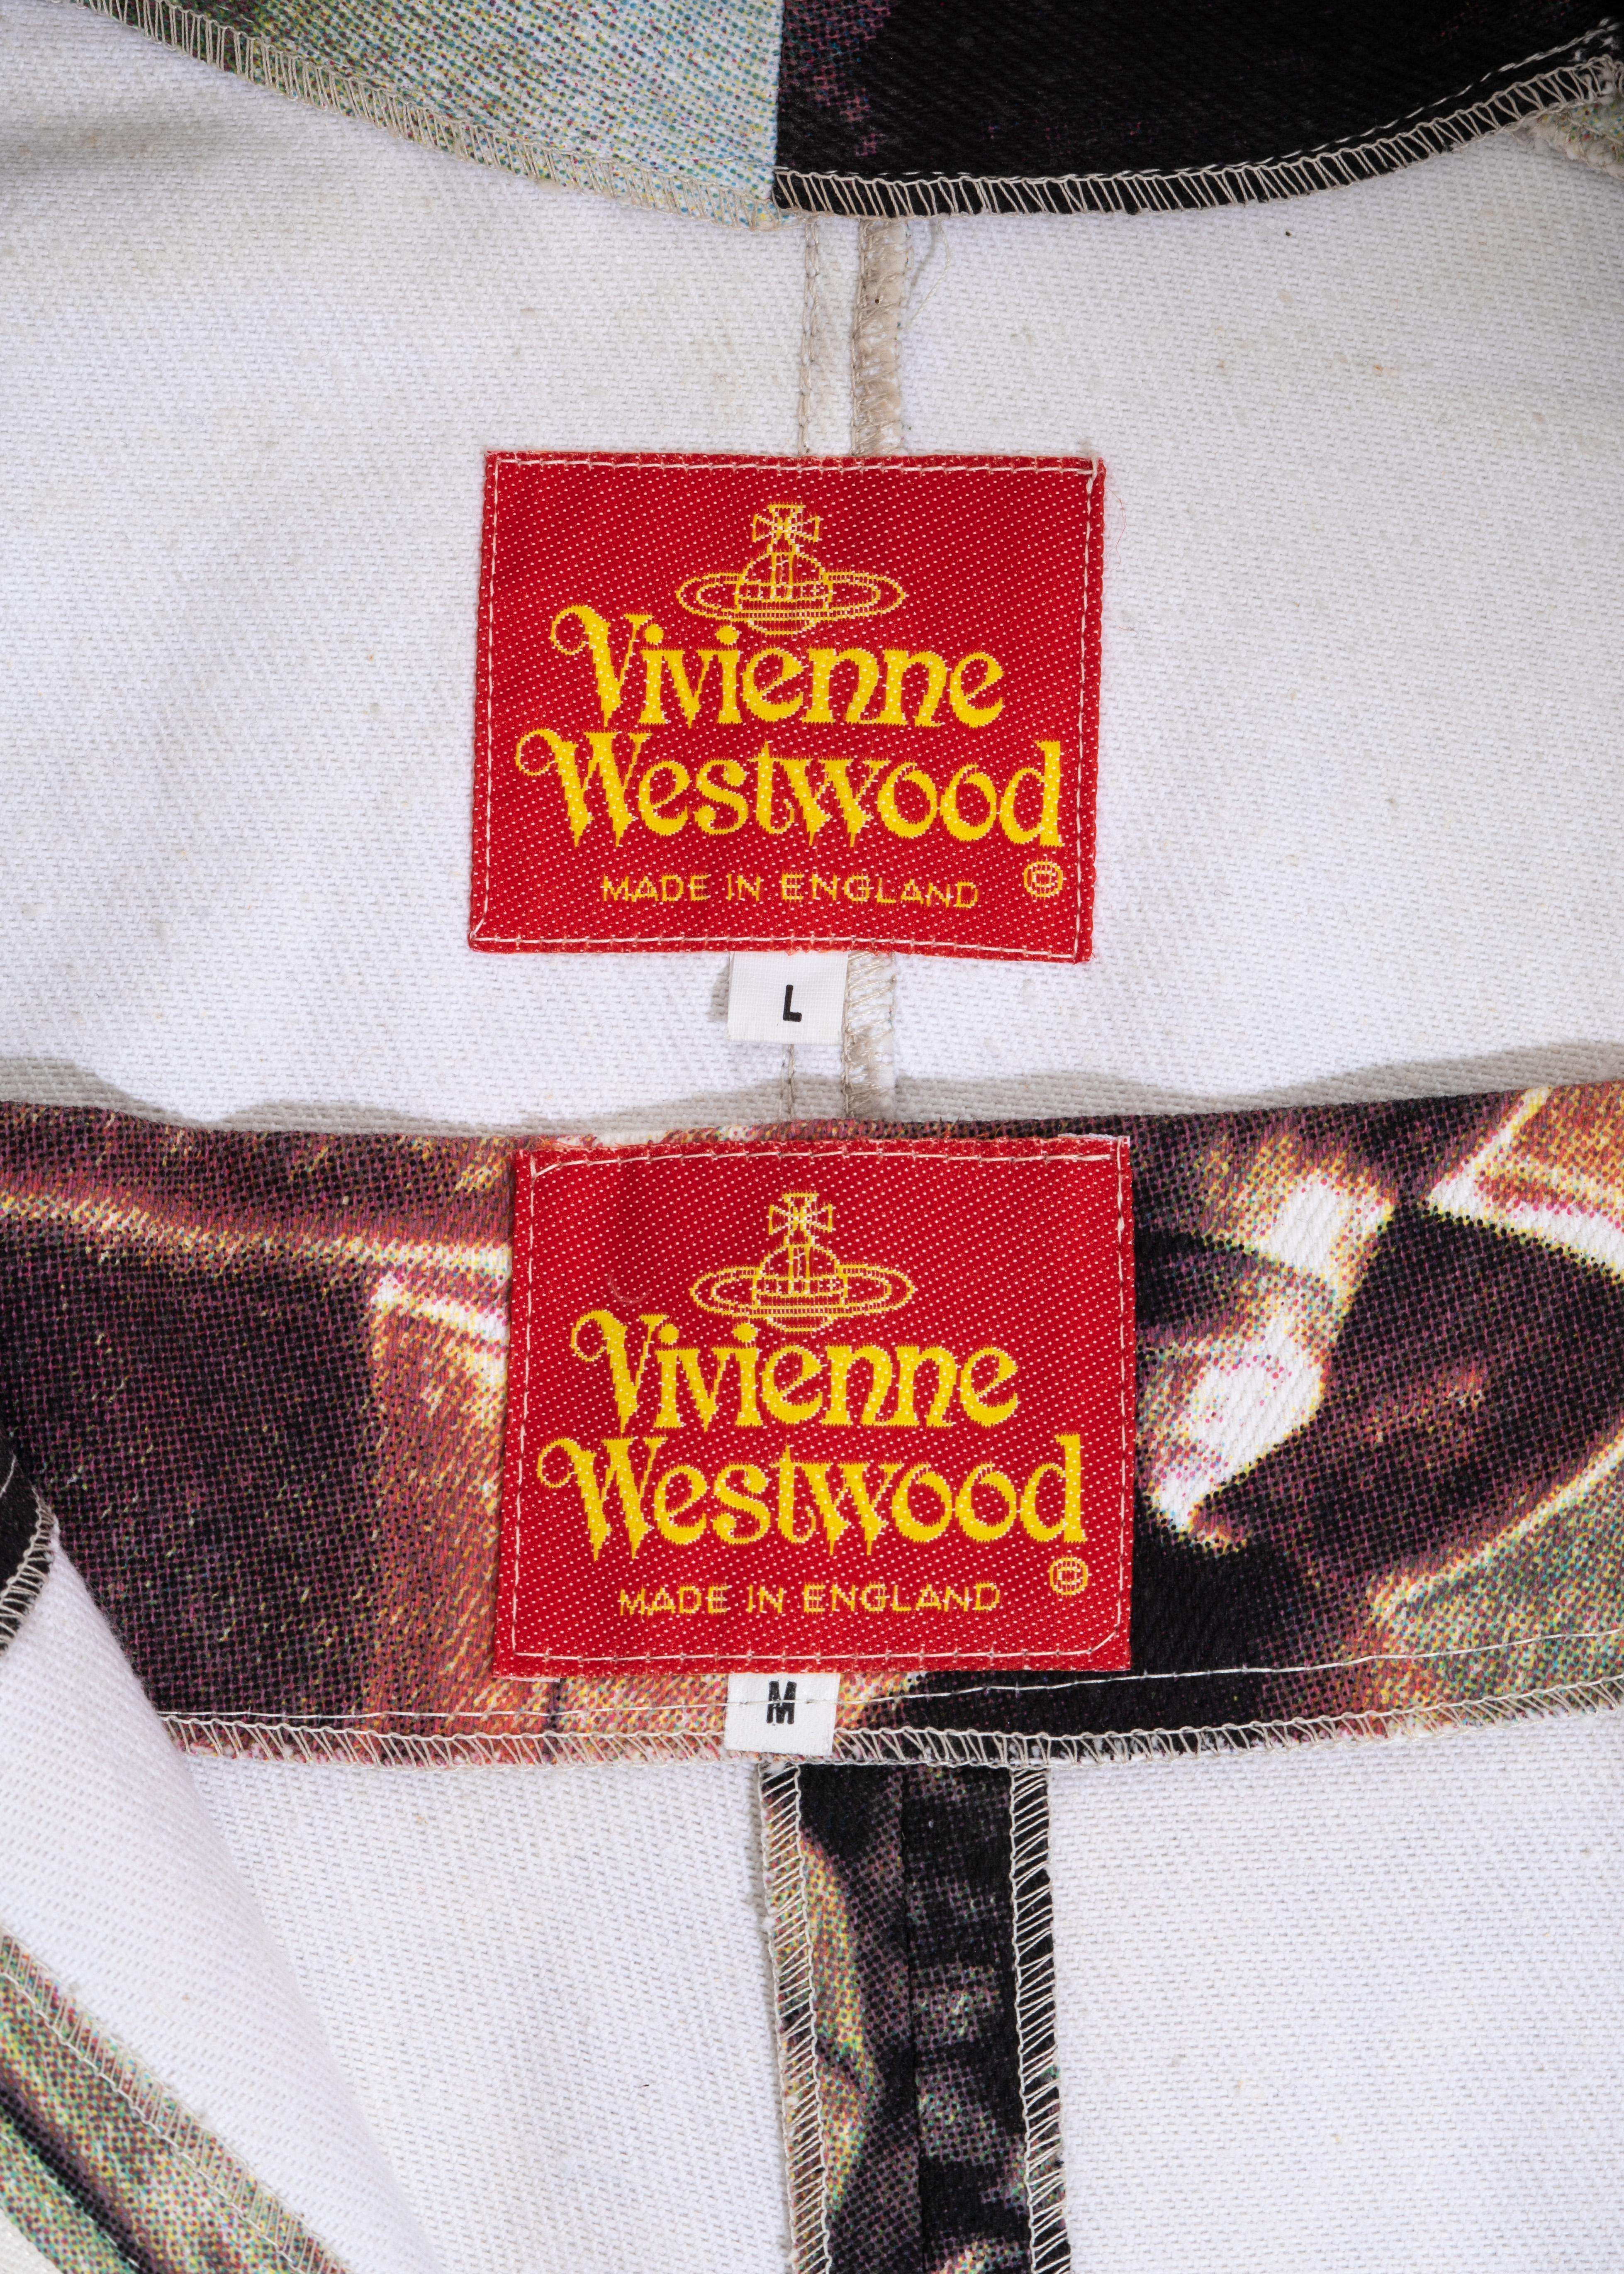 Vivienne Westwood multicoloured 'Salon' denim jacket and shorts suit, ss 1992 3